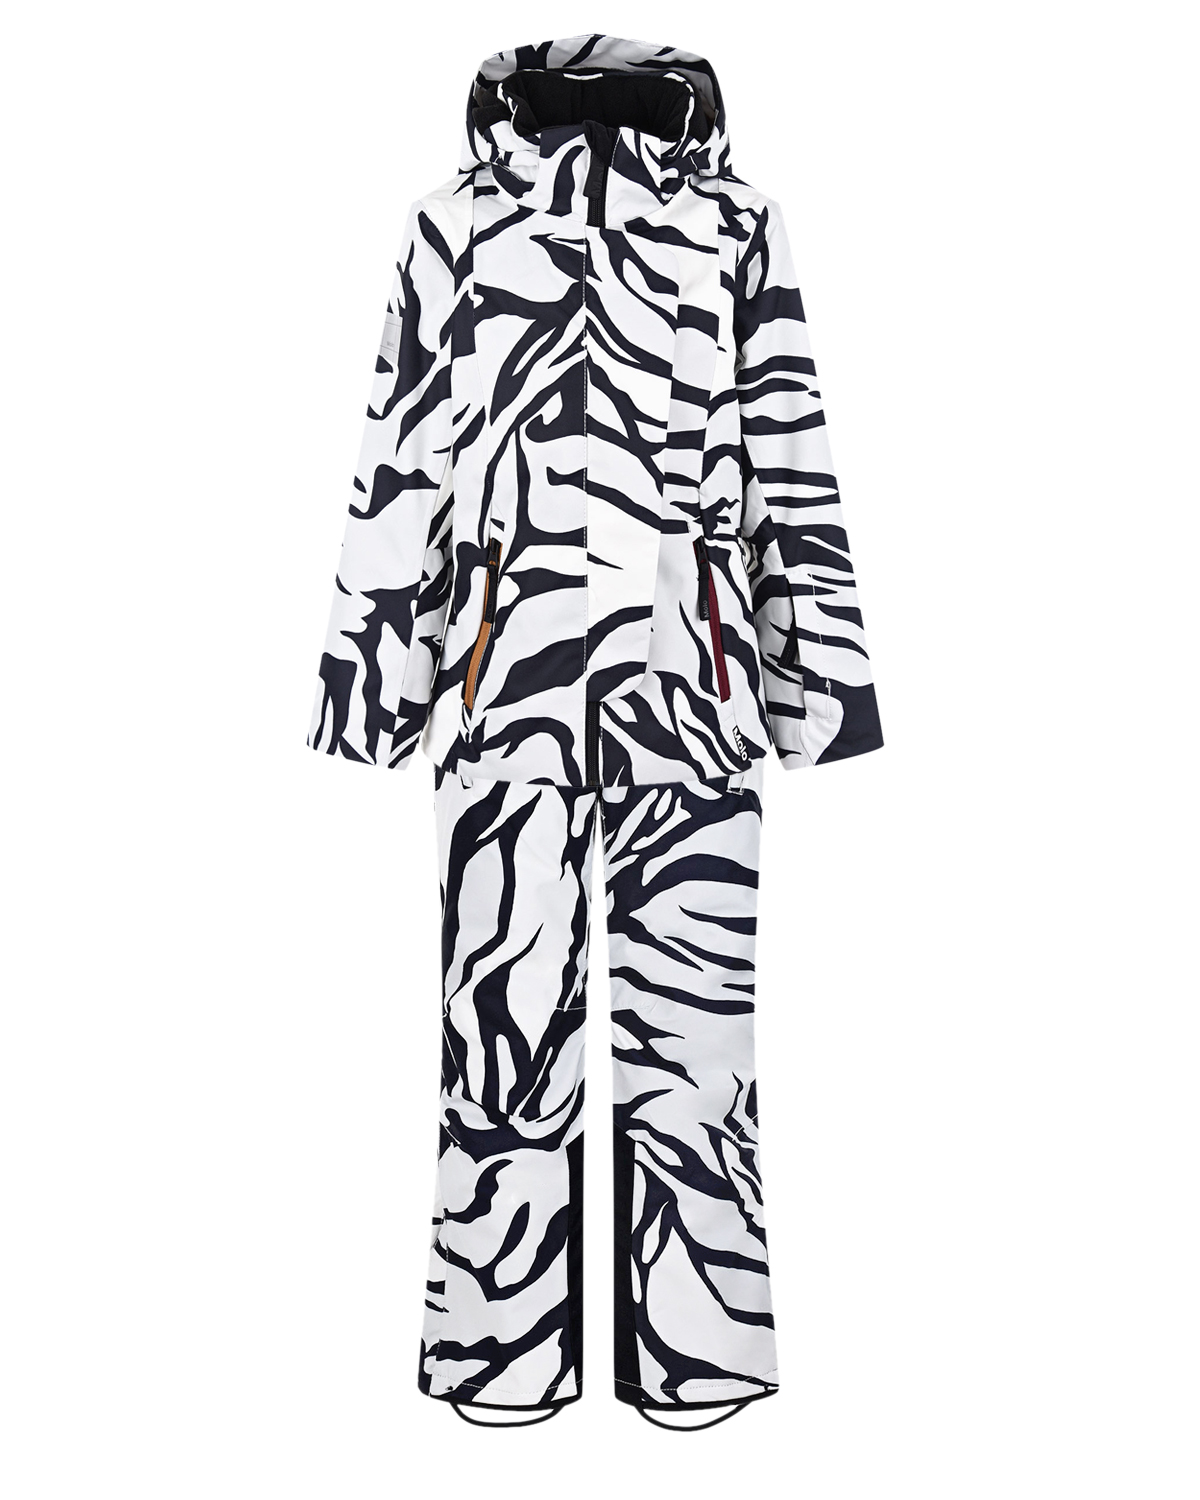 Комплект с принтом "зебра" (куртка, брюки, подтяжки) Molo детский, размер 140, цвет нет цвета Комплект с принтом "зебра" (куртка, брюки, подтяжки) Molo детский - фото 1